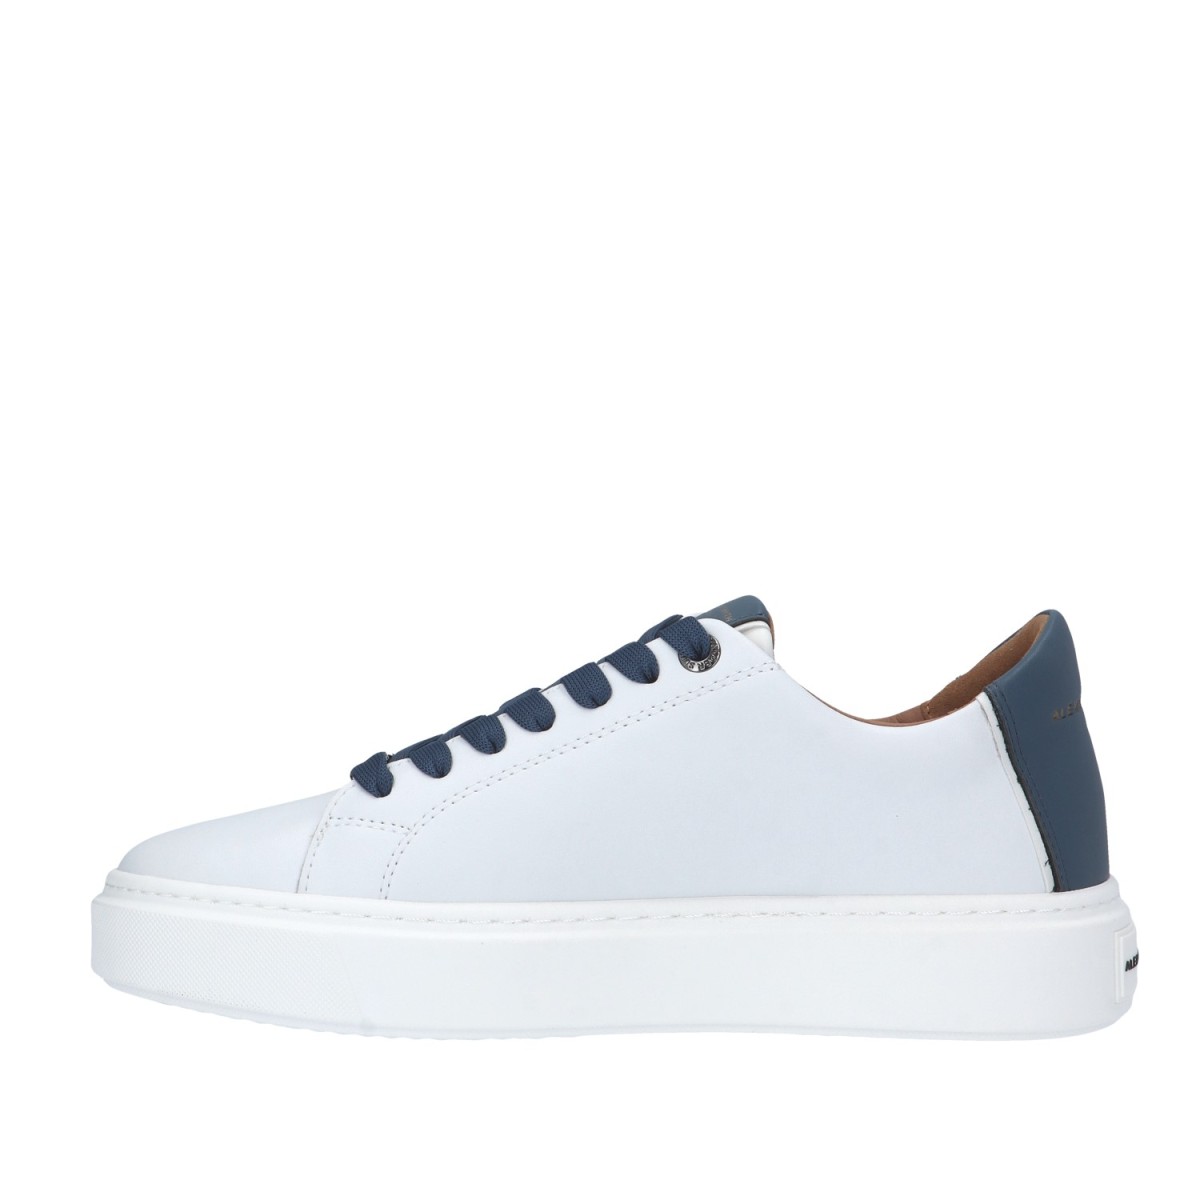 Alexander smith Sneaker Bianco/avio Gomma LDM-9010-WDF